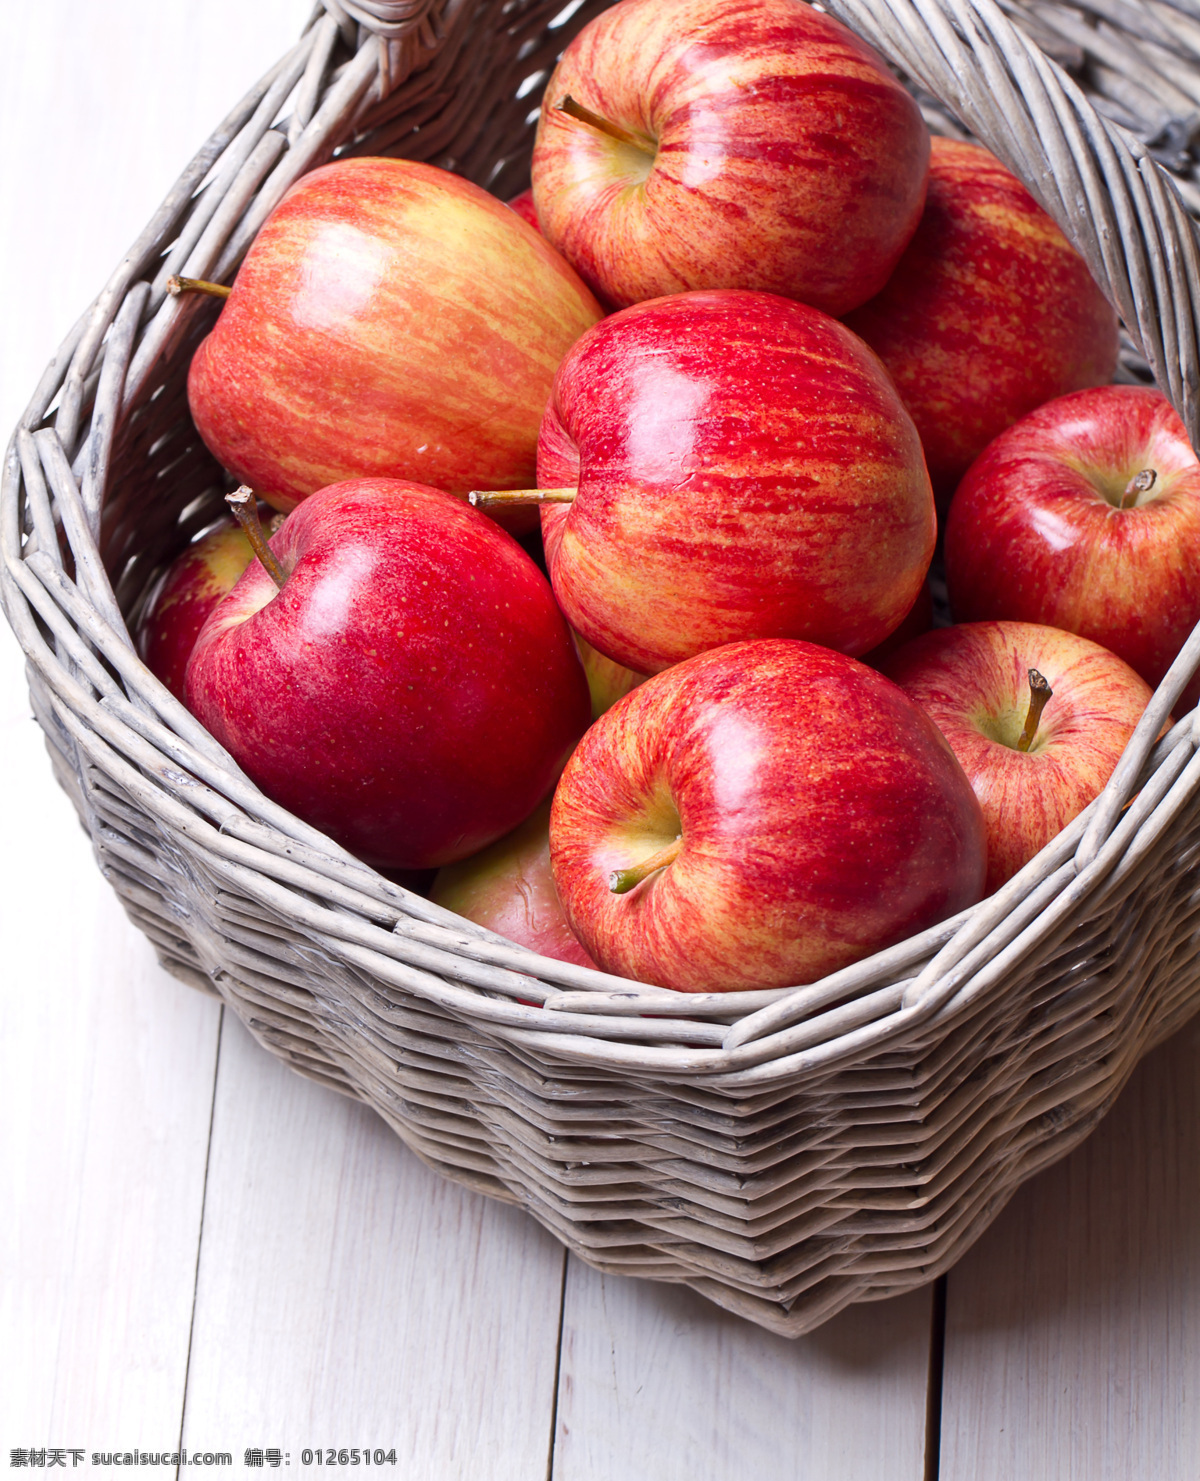 箩 框 里 红苹果 苹果 新鲜水果 美味水果 有机水果 水果蔬菜 水果摄影 苹果图片 餐饮美食